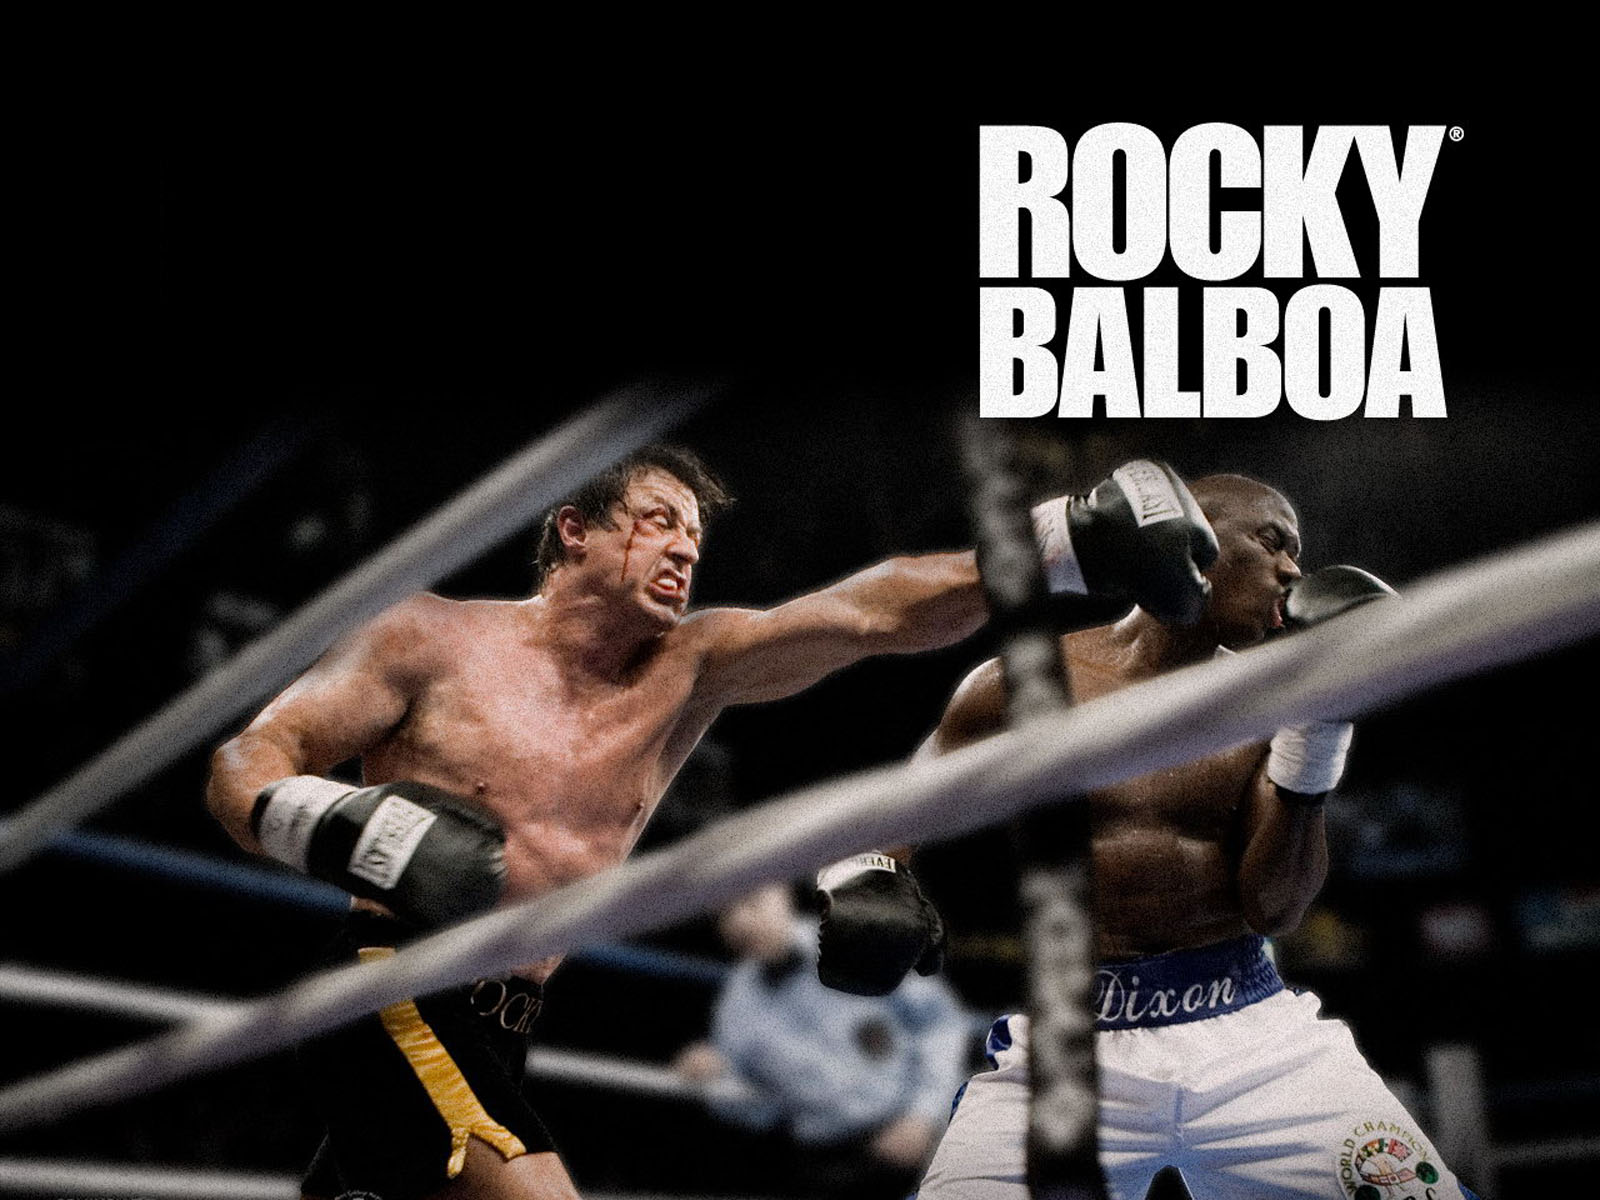 movie, rocky balboa Free Stock Photo